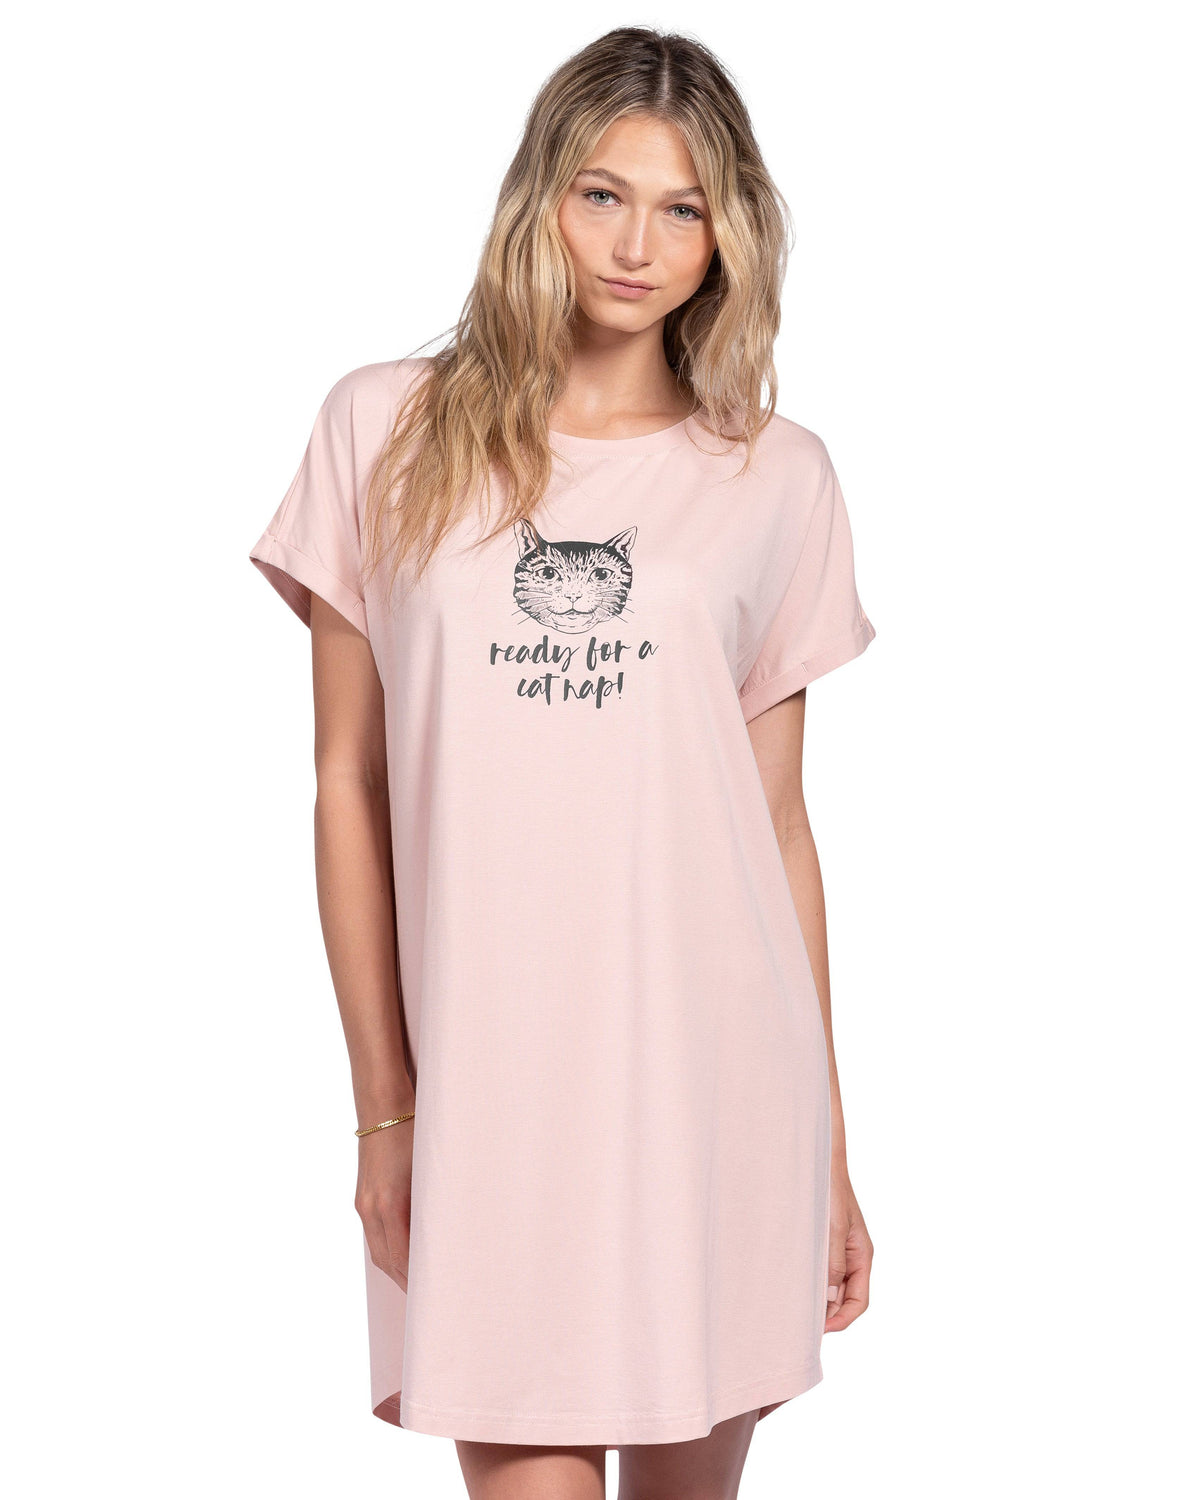 T Shirt Dress Ready For A Cat Nap Lattelove Co 0085